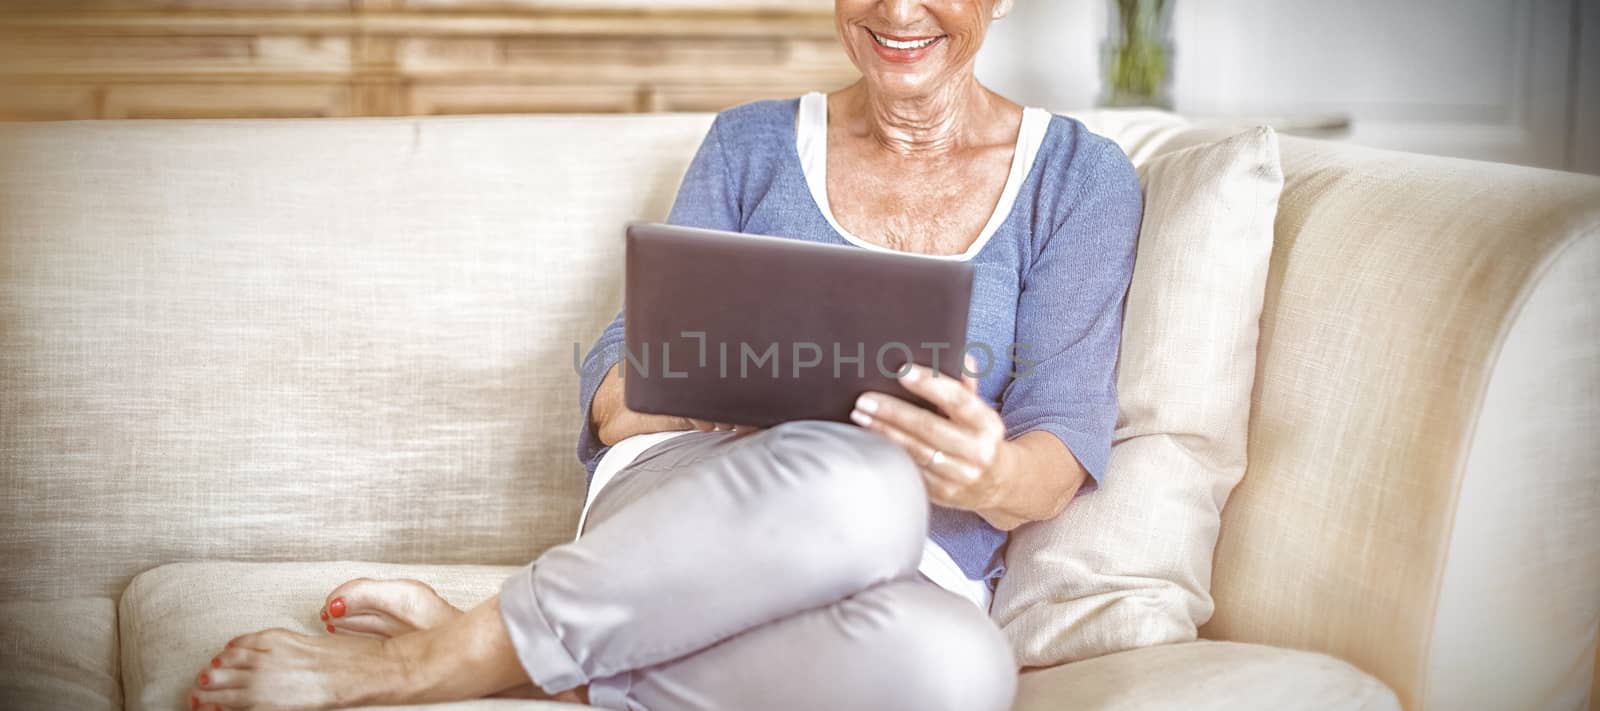 Senior woman using digital tablet in living room by Wavebreakmedia